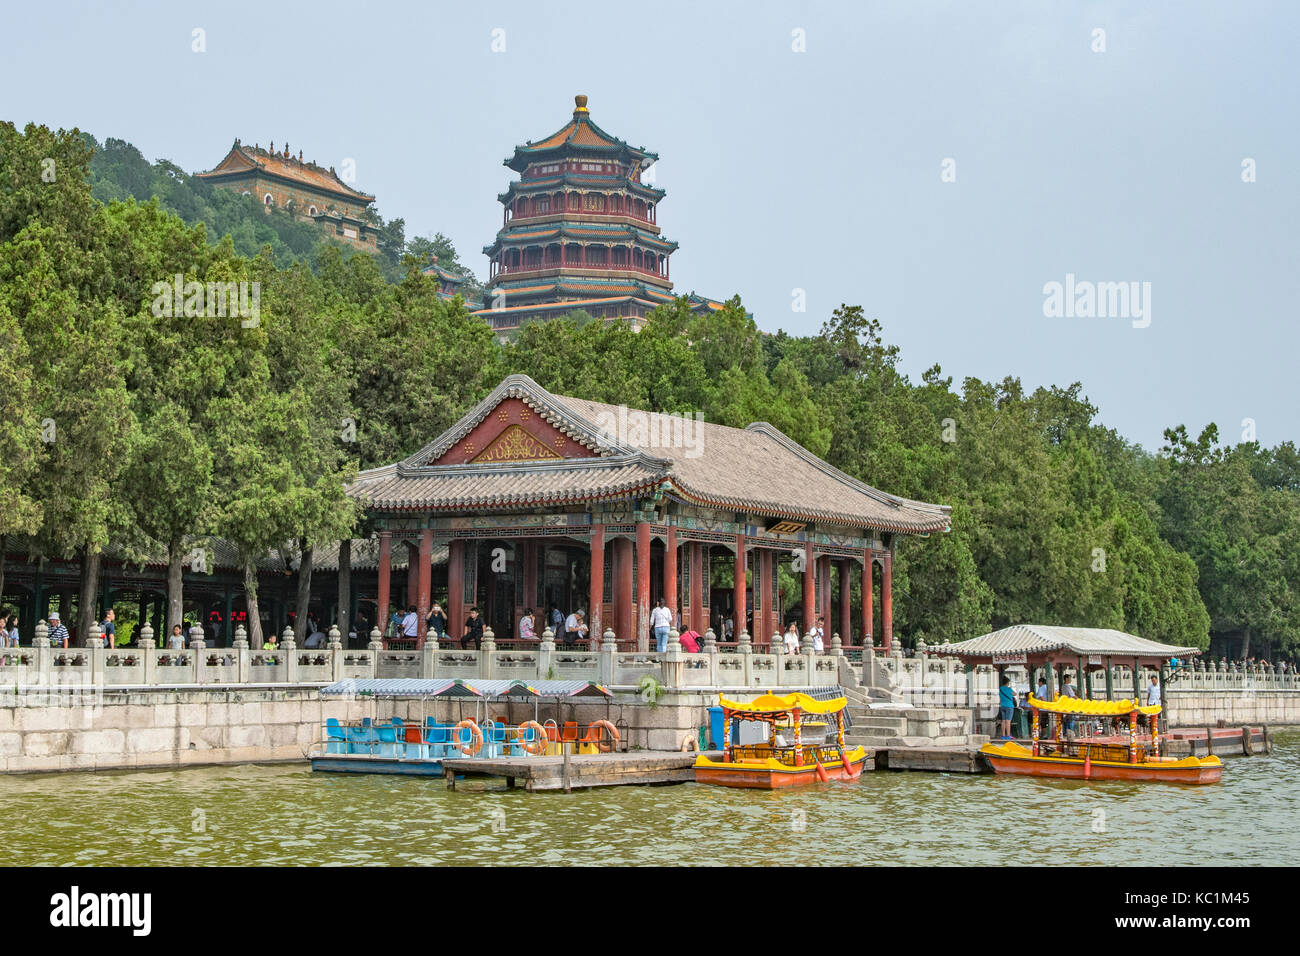 Les bateaux de plaisance sur le Lac de Kunming, Summer palace, Beijing, Chine Banque D'Images